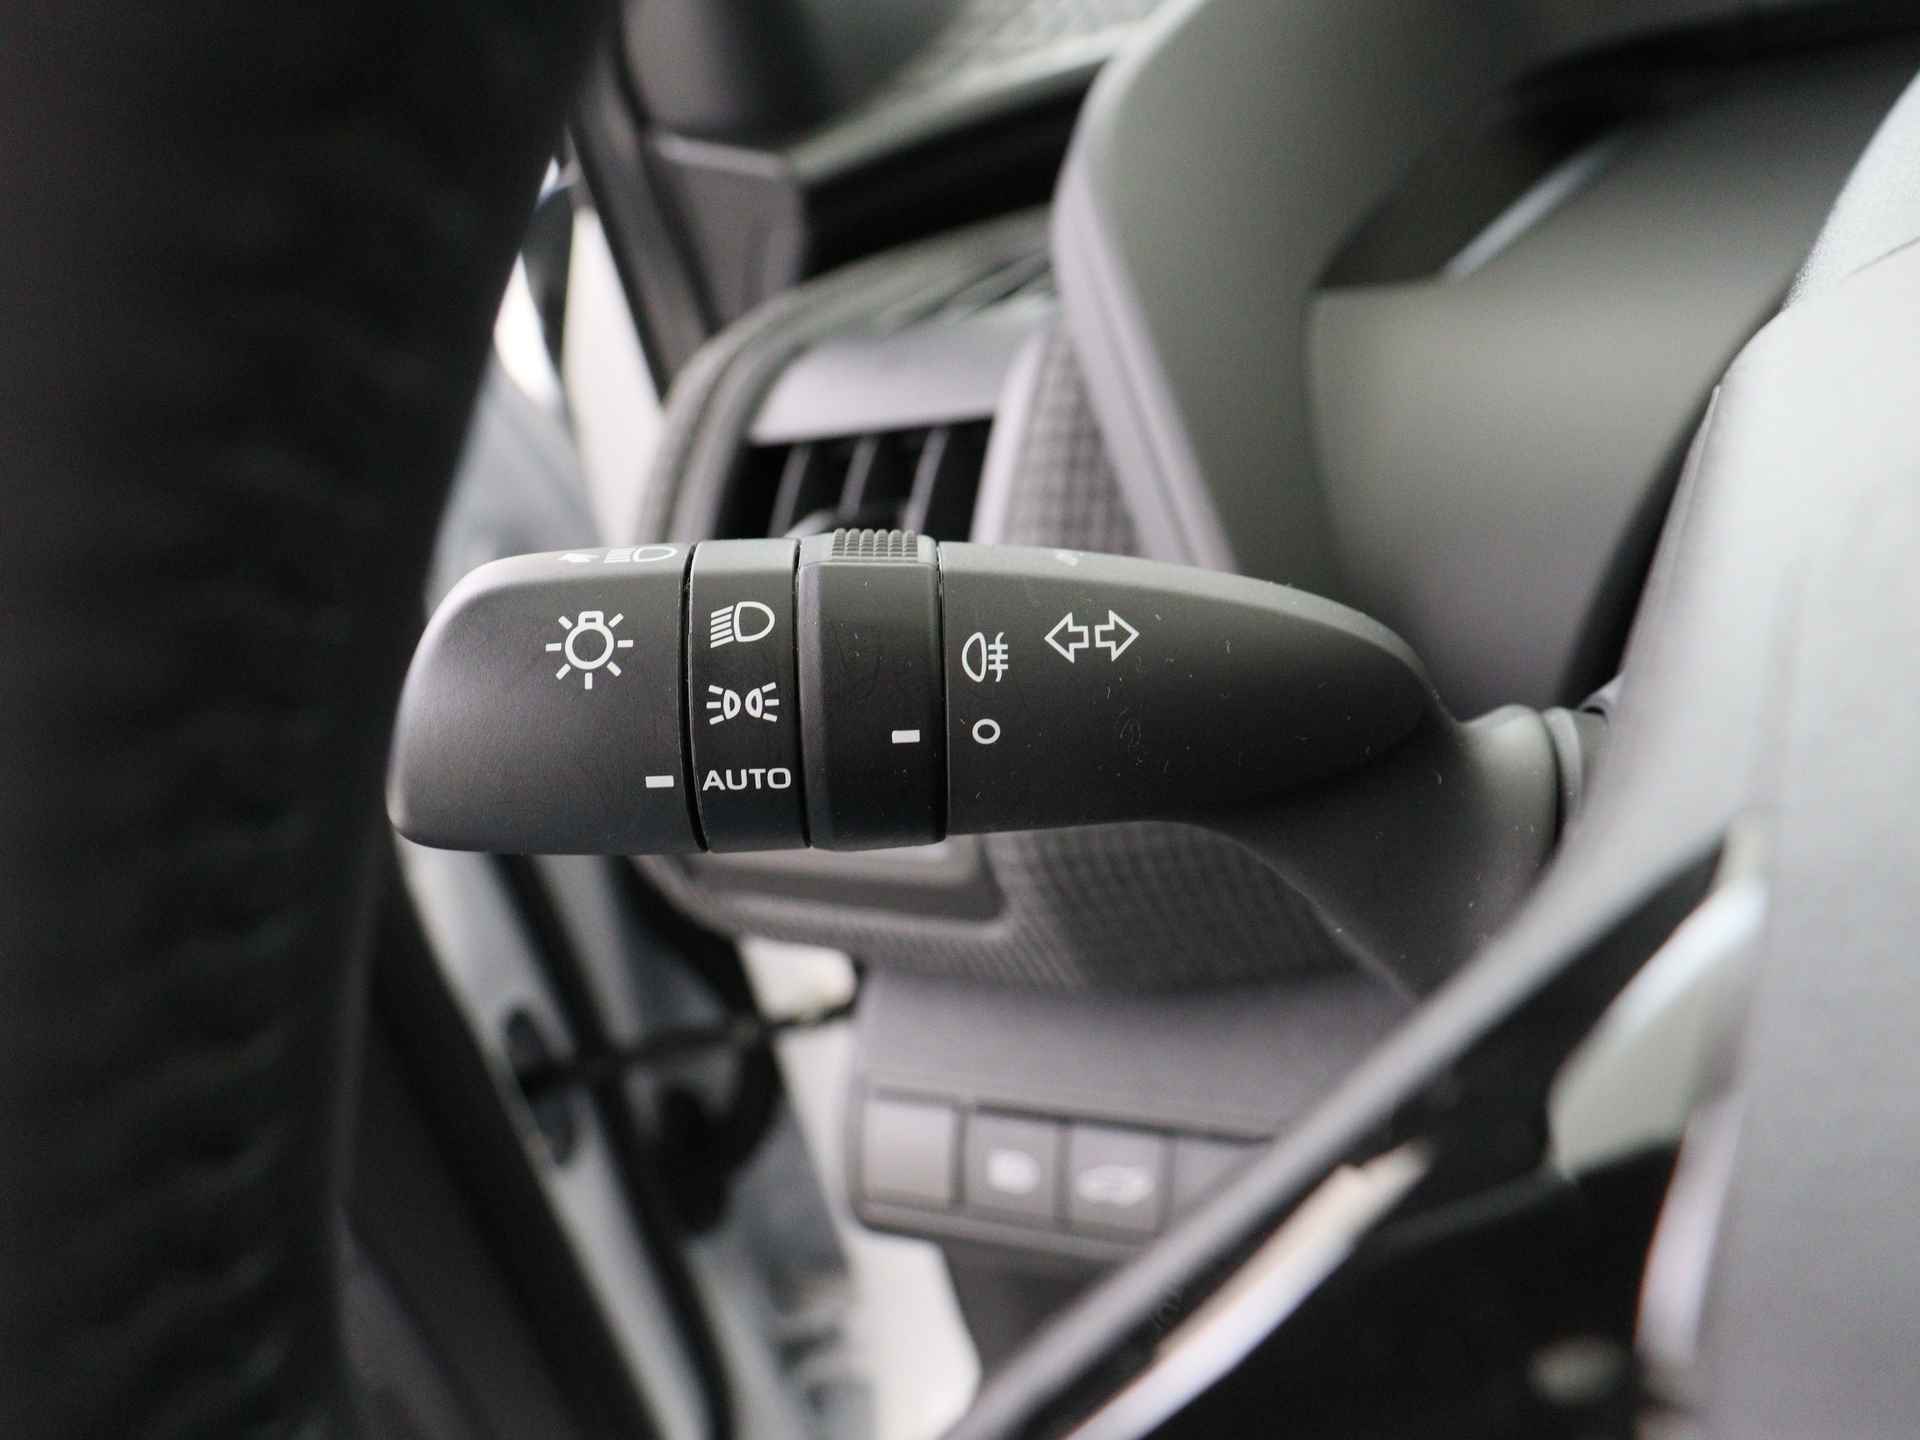 Toyota Bz4x Launch Edition Premium Bi-Tone uitvoering | Navigatie | Stoel&stuur verwarming | My T app | Panoramadak | Wegenbelasting vrij | Subsidie €2000,- aanvraag mogelijk. - 20/48